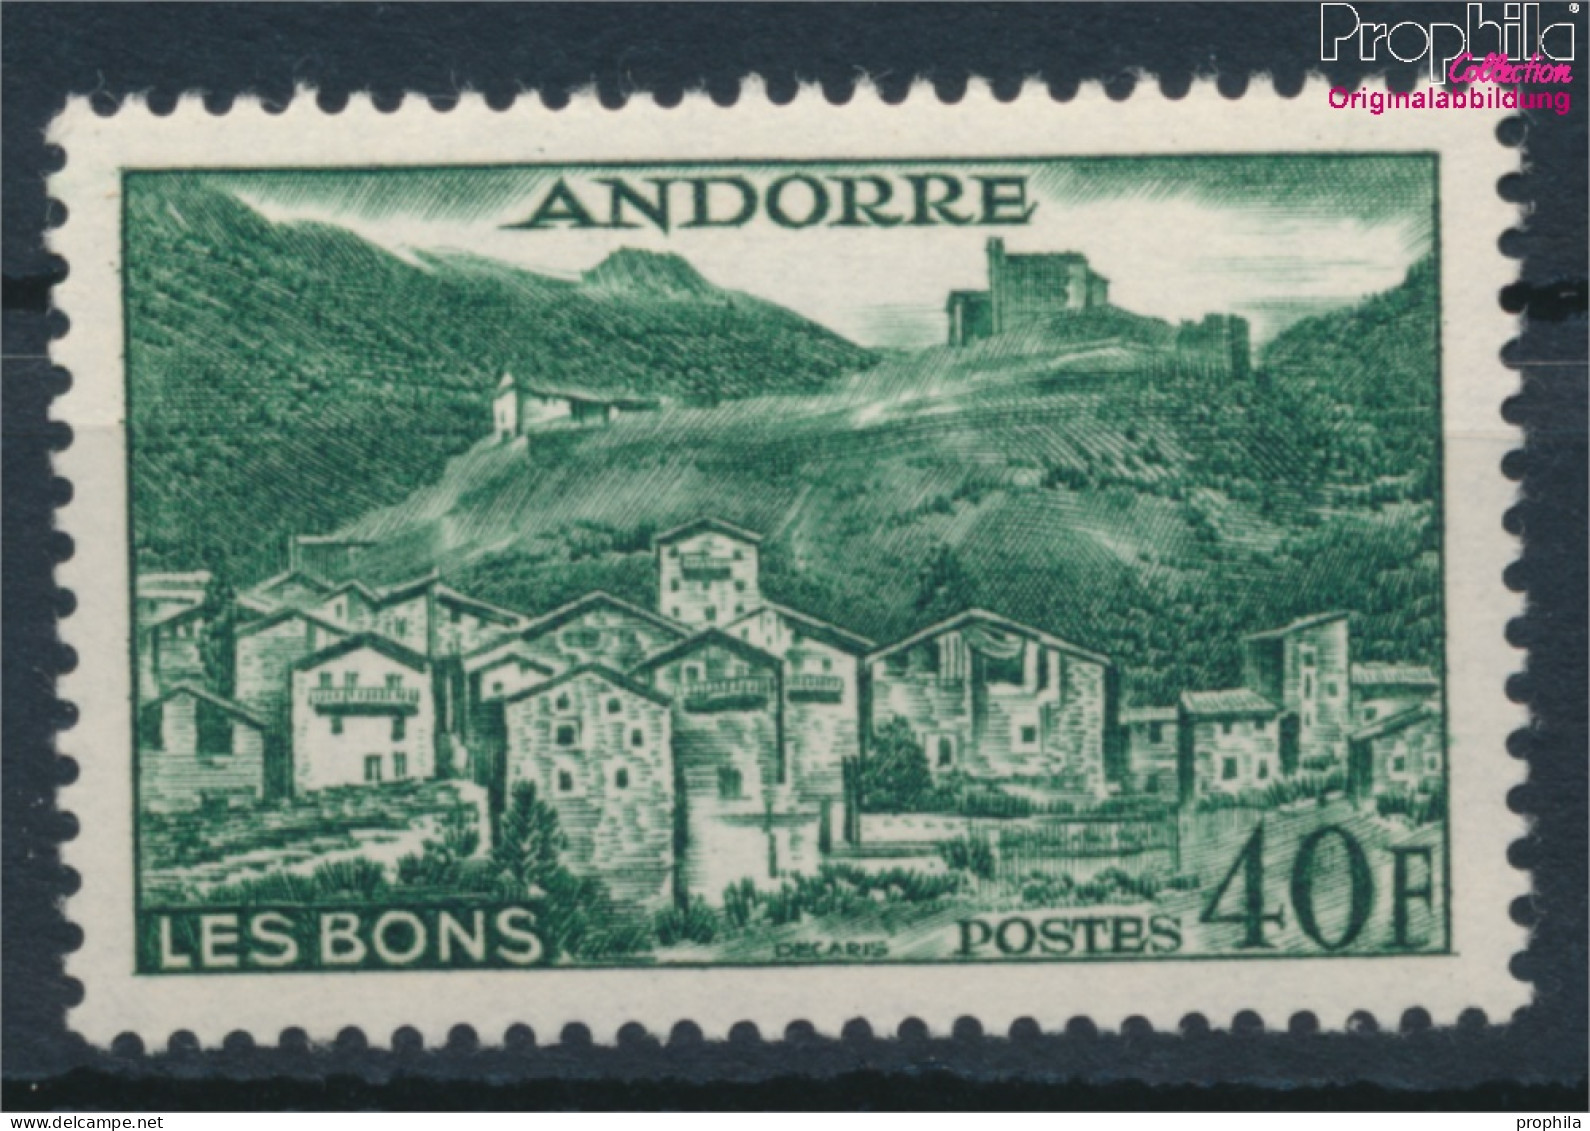 Andorra - Französische Post 155 Postfrisch 1955 Landschaften (10368396 - Nuevos